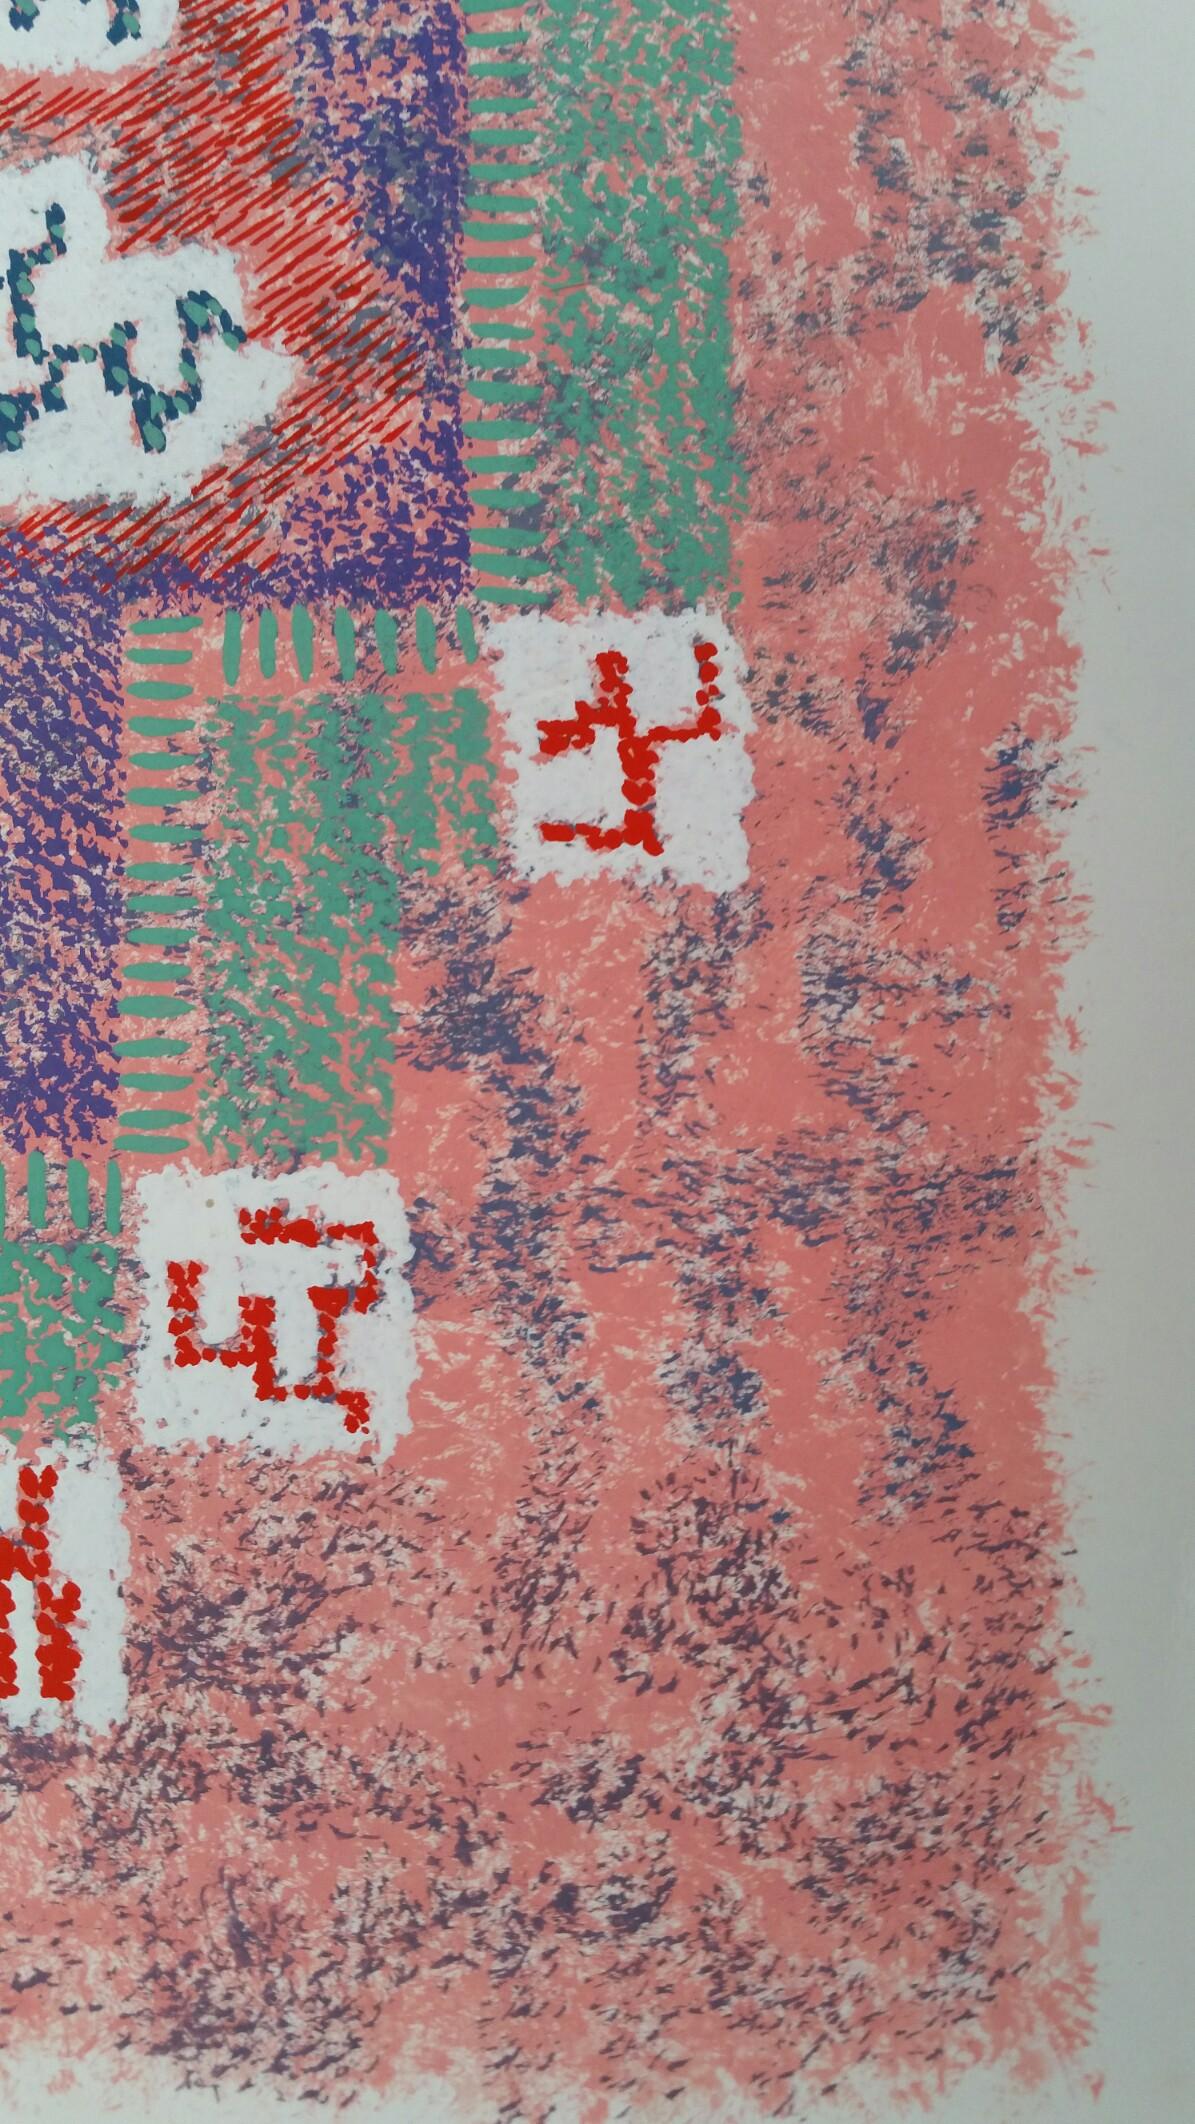 Pointillist großes abstraktes Design
von Louis Bellon (Französisch 1908-1998)
signiert unten links im Bild
gouache-Malerei auf Papier, ungerahmt
abmessungen: 16.5 x 10 Zoll (insgesamt misst das Blatt 19,5 x 12,5 Zoll)

provenienz: Privatsammlung des